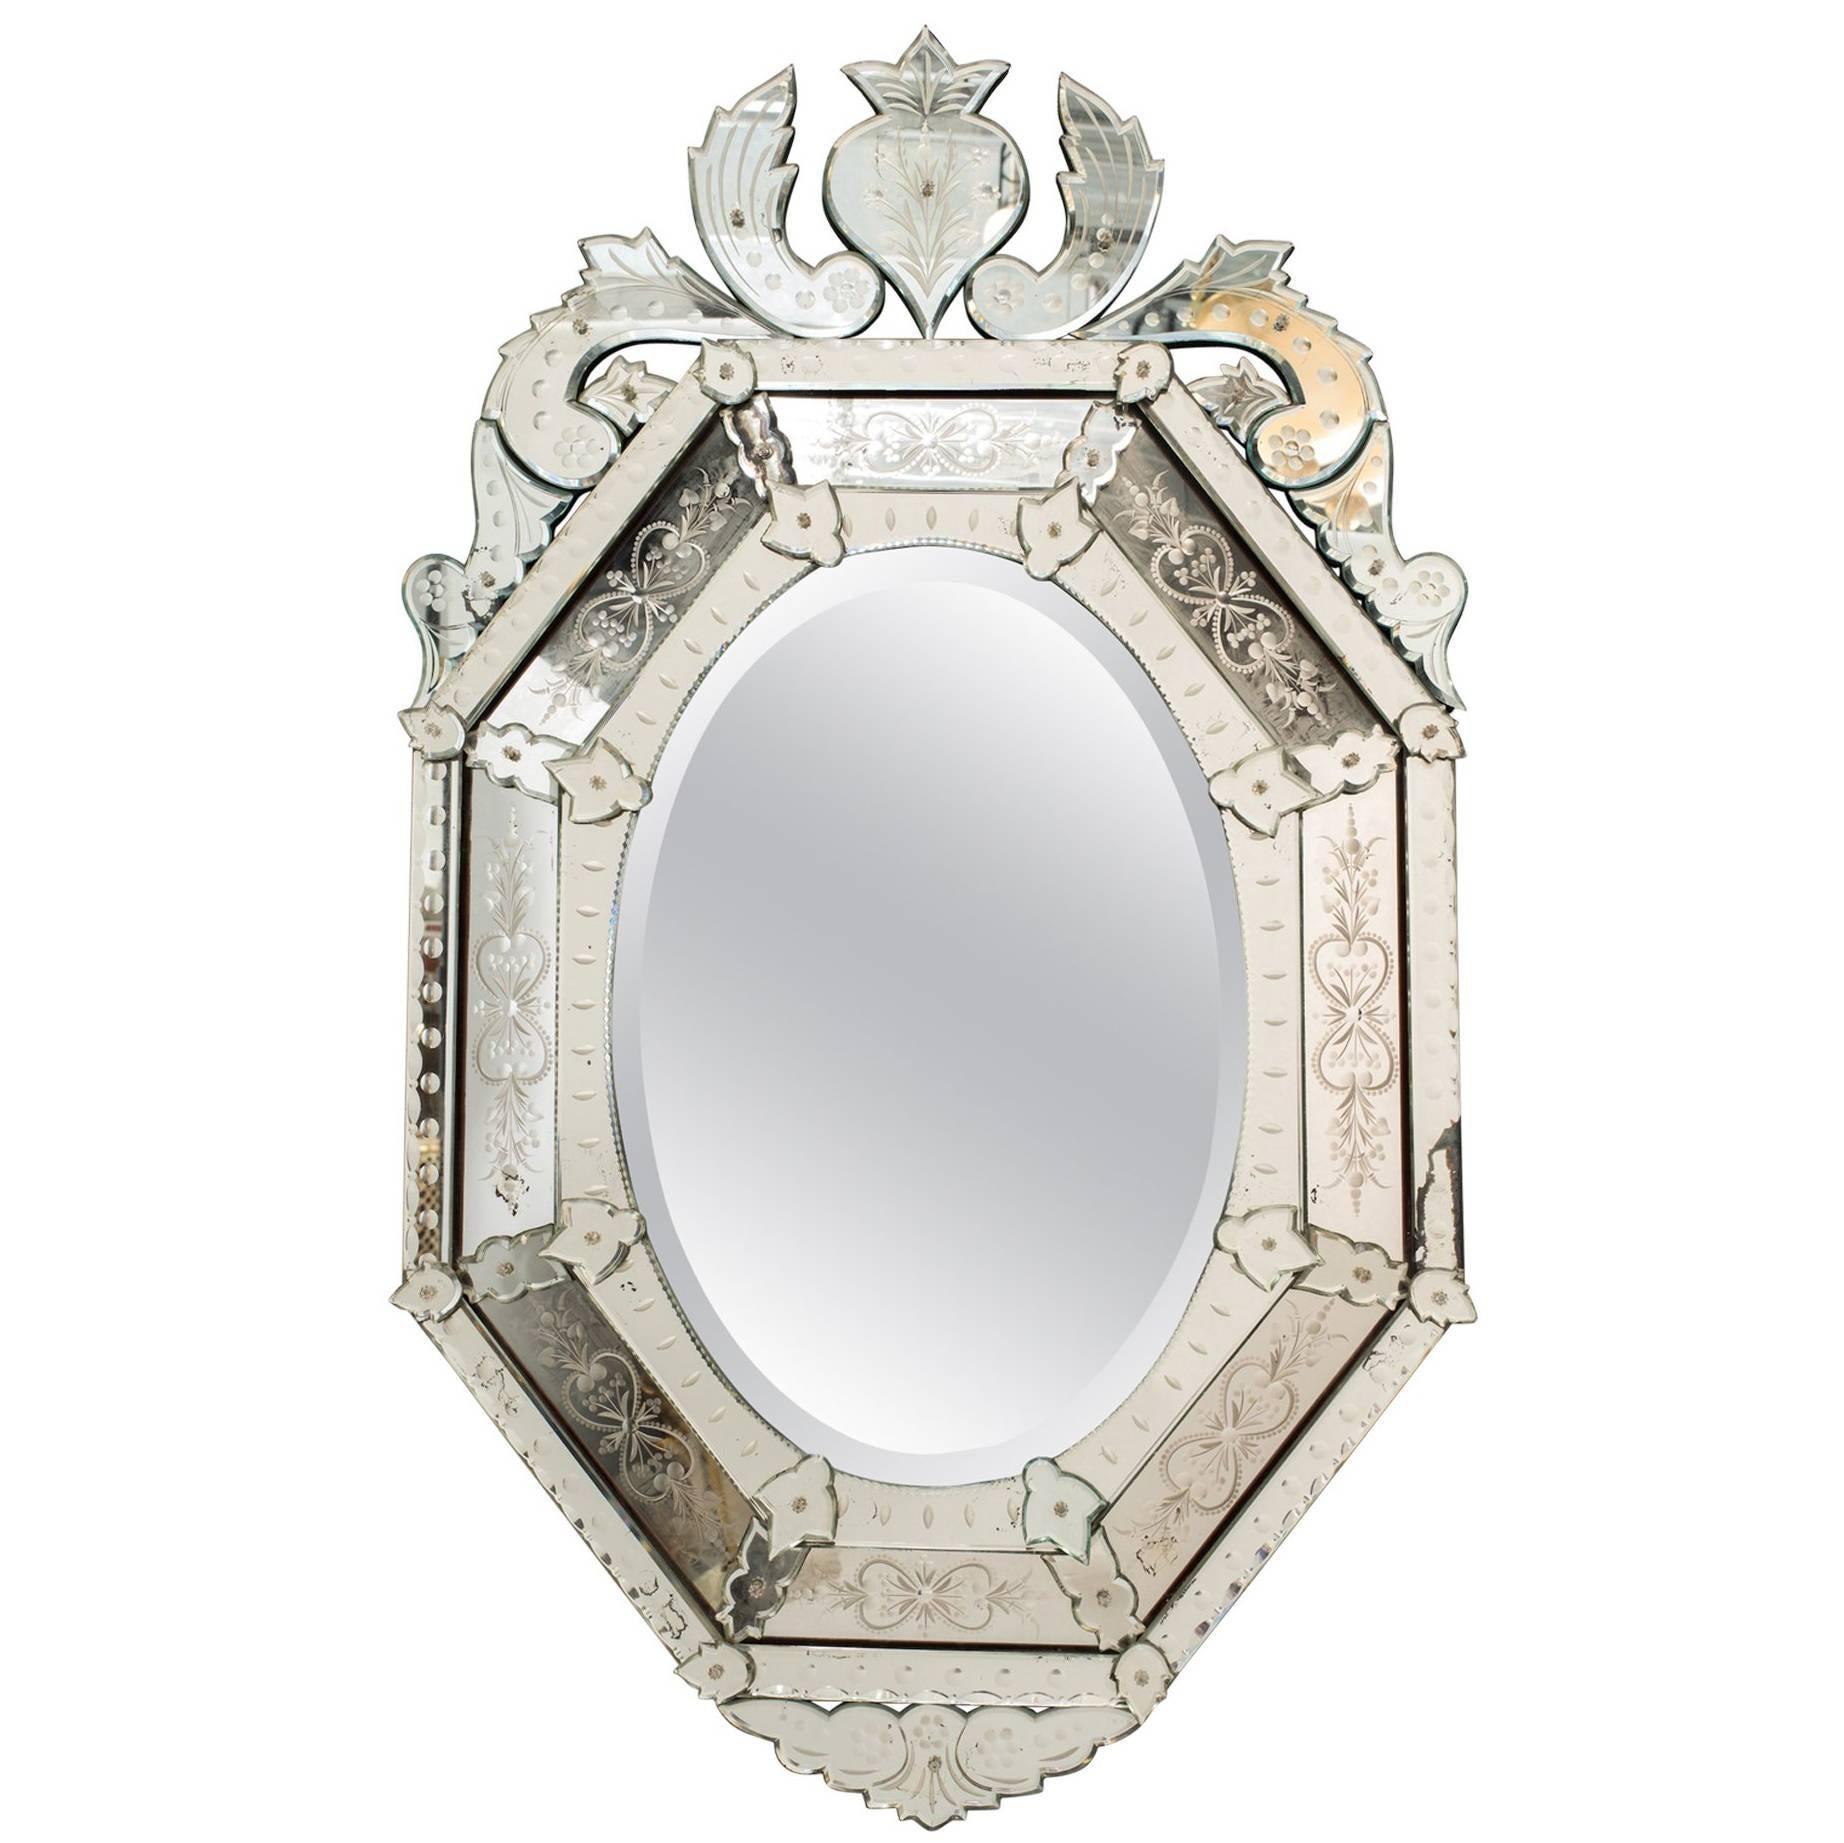  1930s Octagonal Venetian Mirror with Crown